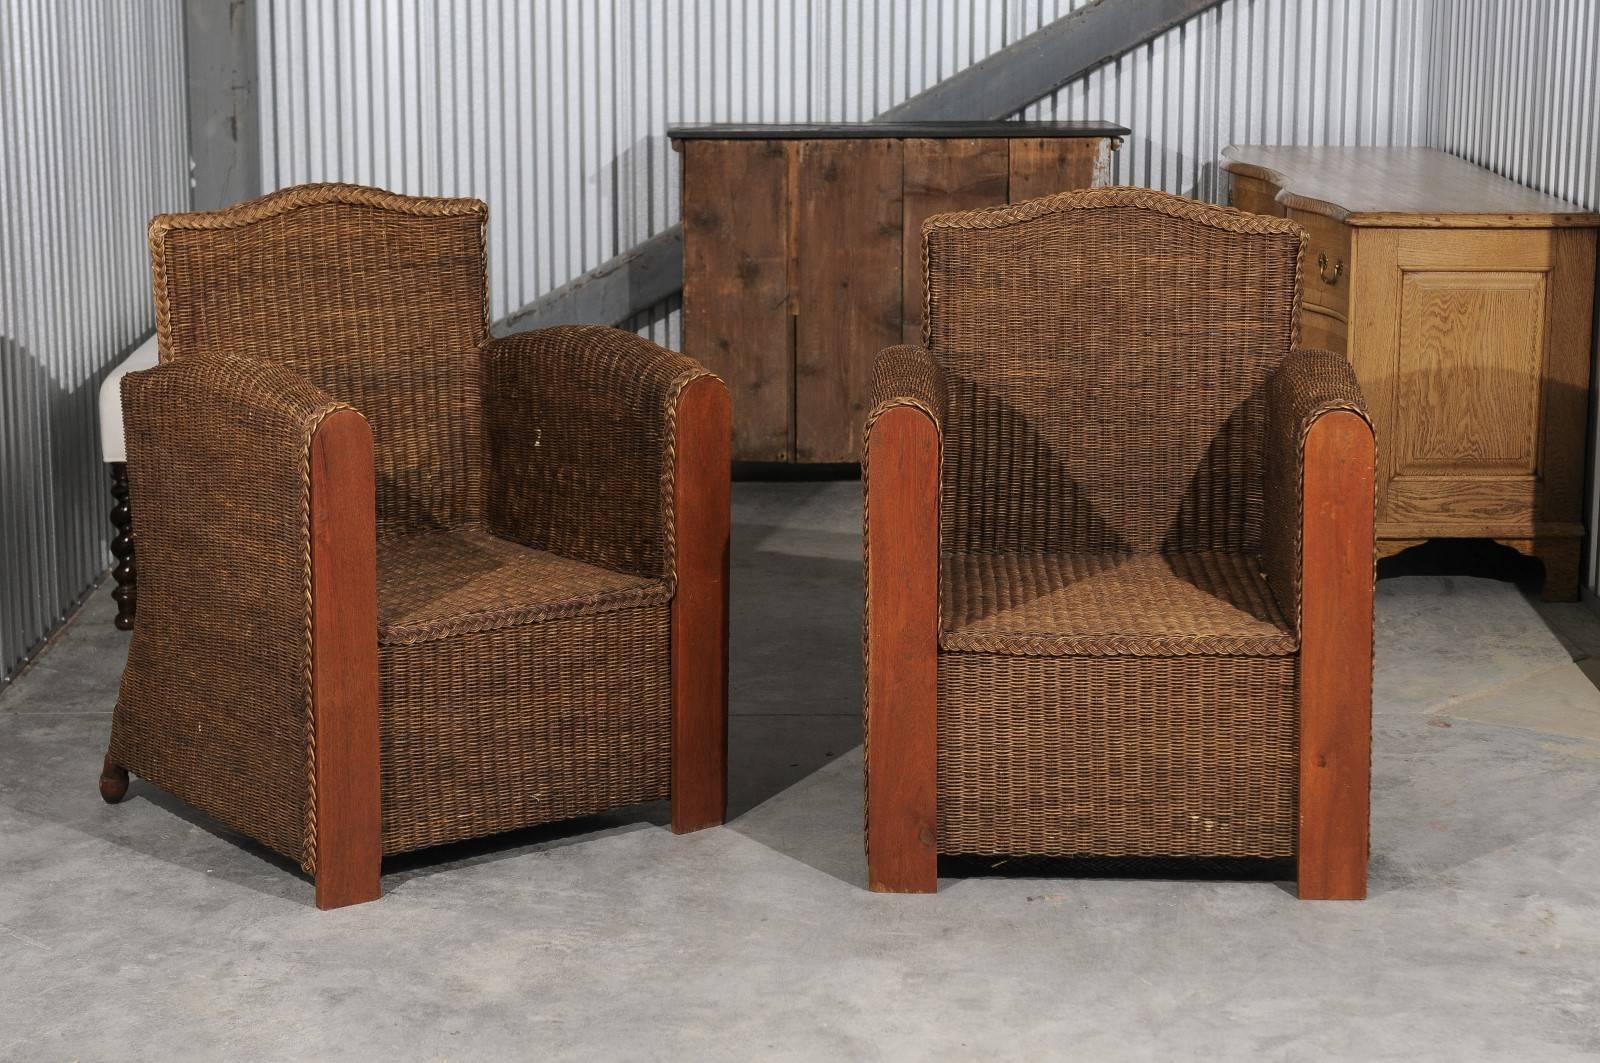 Ein Paar französische Vintage-Clubsessel aus Korbgeflecht und Holz aus der Mitte des 20. Jahrhunderts. Jeder Stuhl besteht aus einem Korbgeflecht mit Armlehnen aus Holz und hat eine gerade Kamelrückenlehne. Die hohen, geraden Armlehnen sorgen für